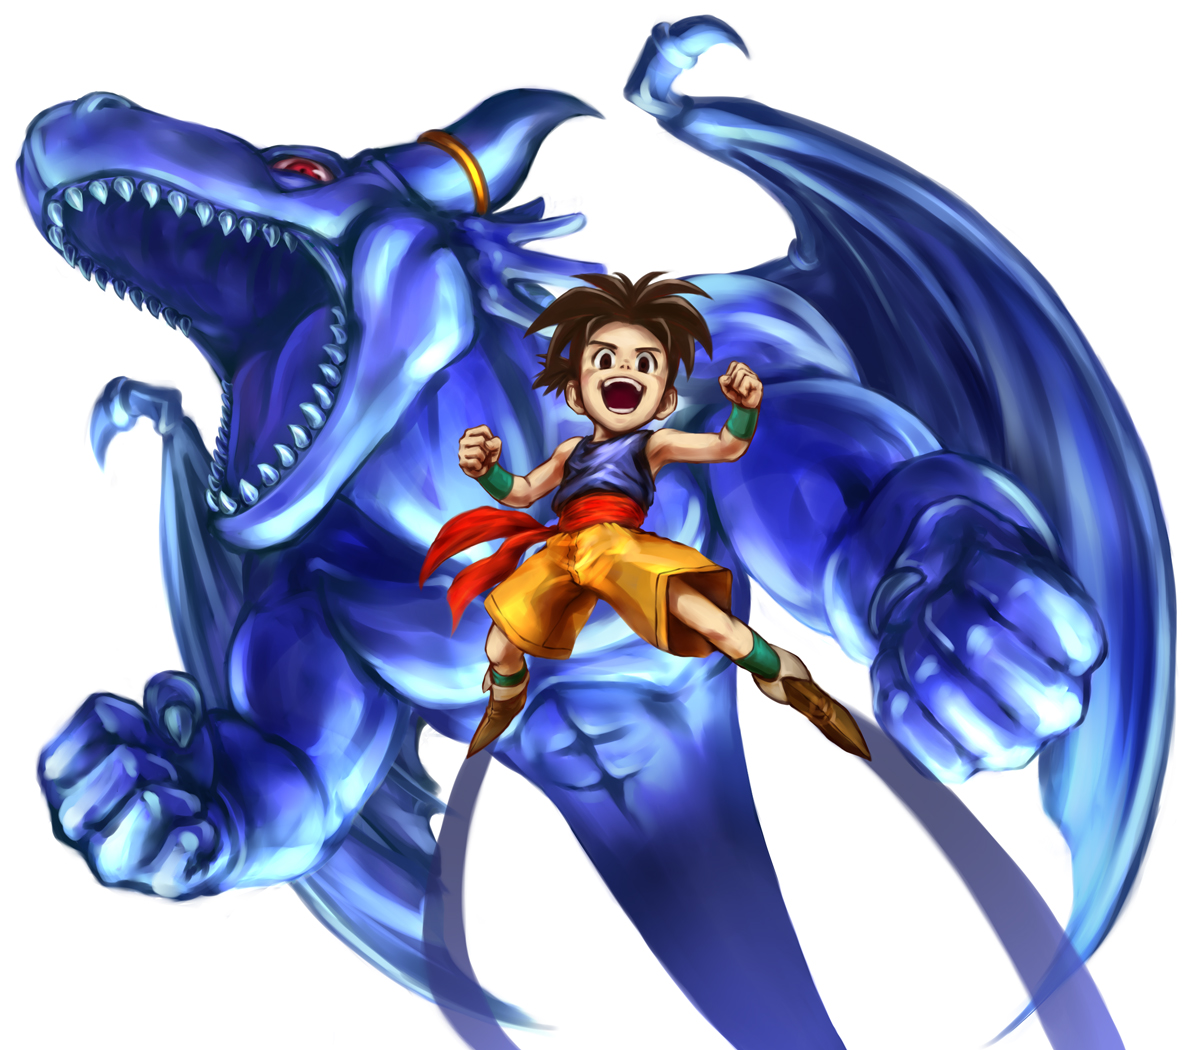 Shu, il protagonista del videogioco e anime Blue Dragon